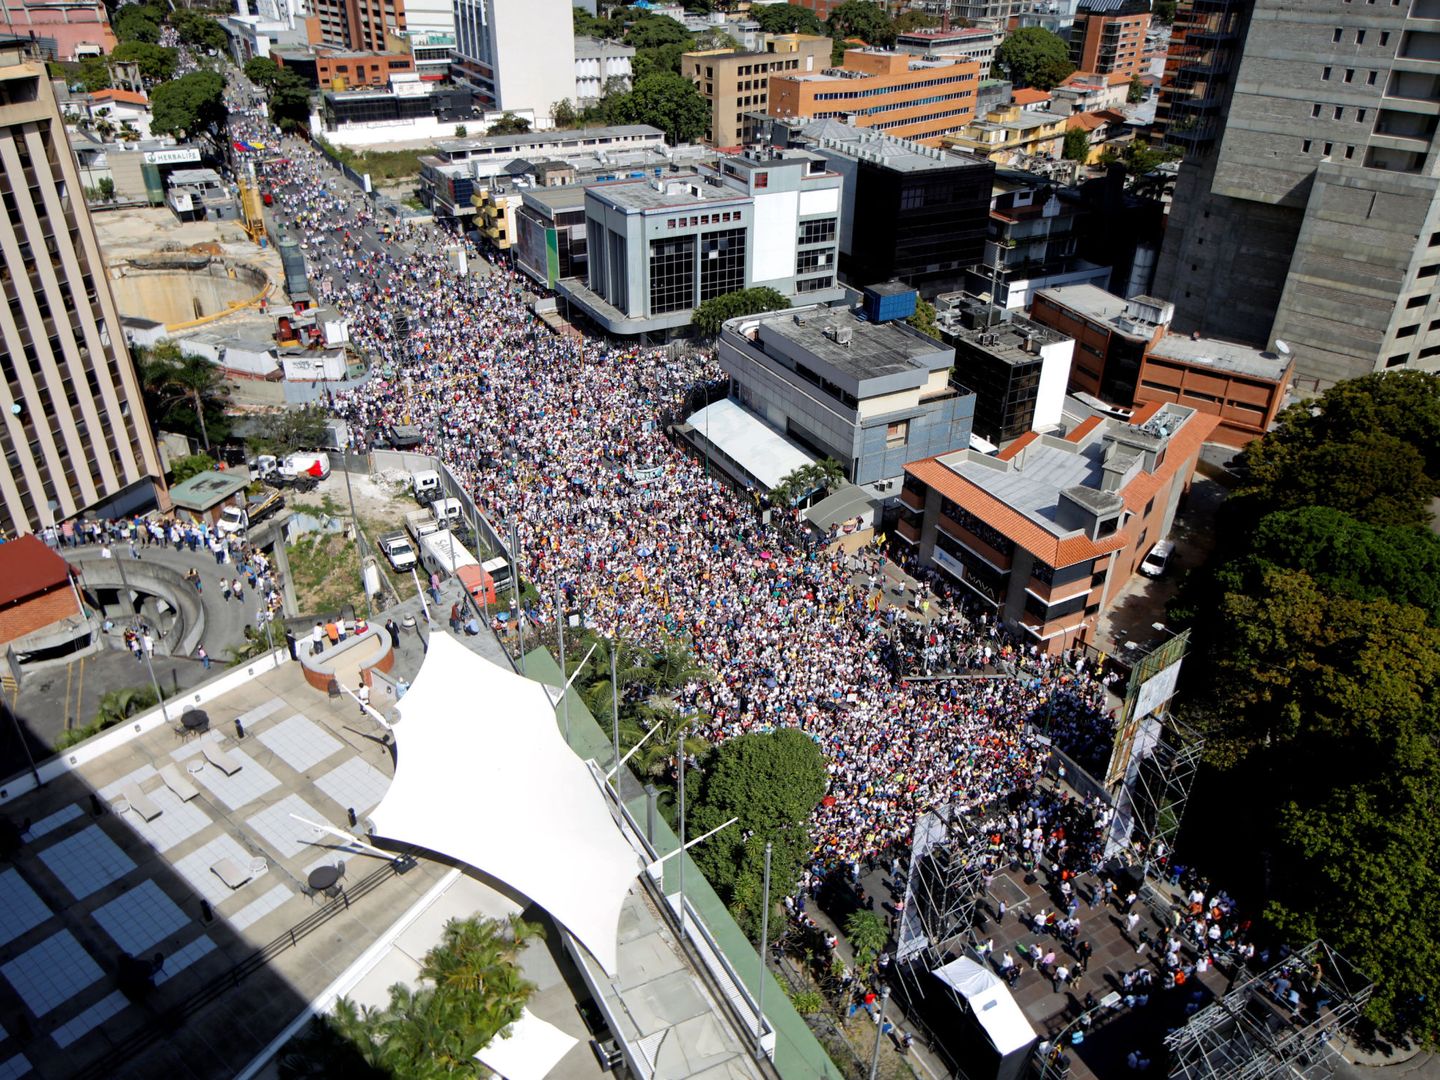 Vista general de la concentración de la oposición en las movilizaciones contra el Gobierno de Nicolás Maduro en Caracas. (Reuters)